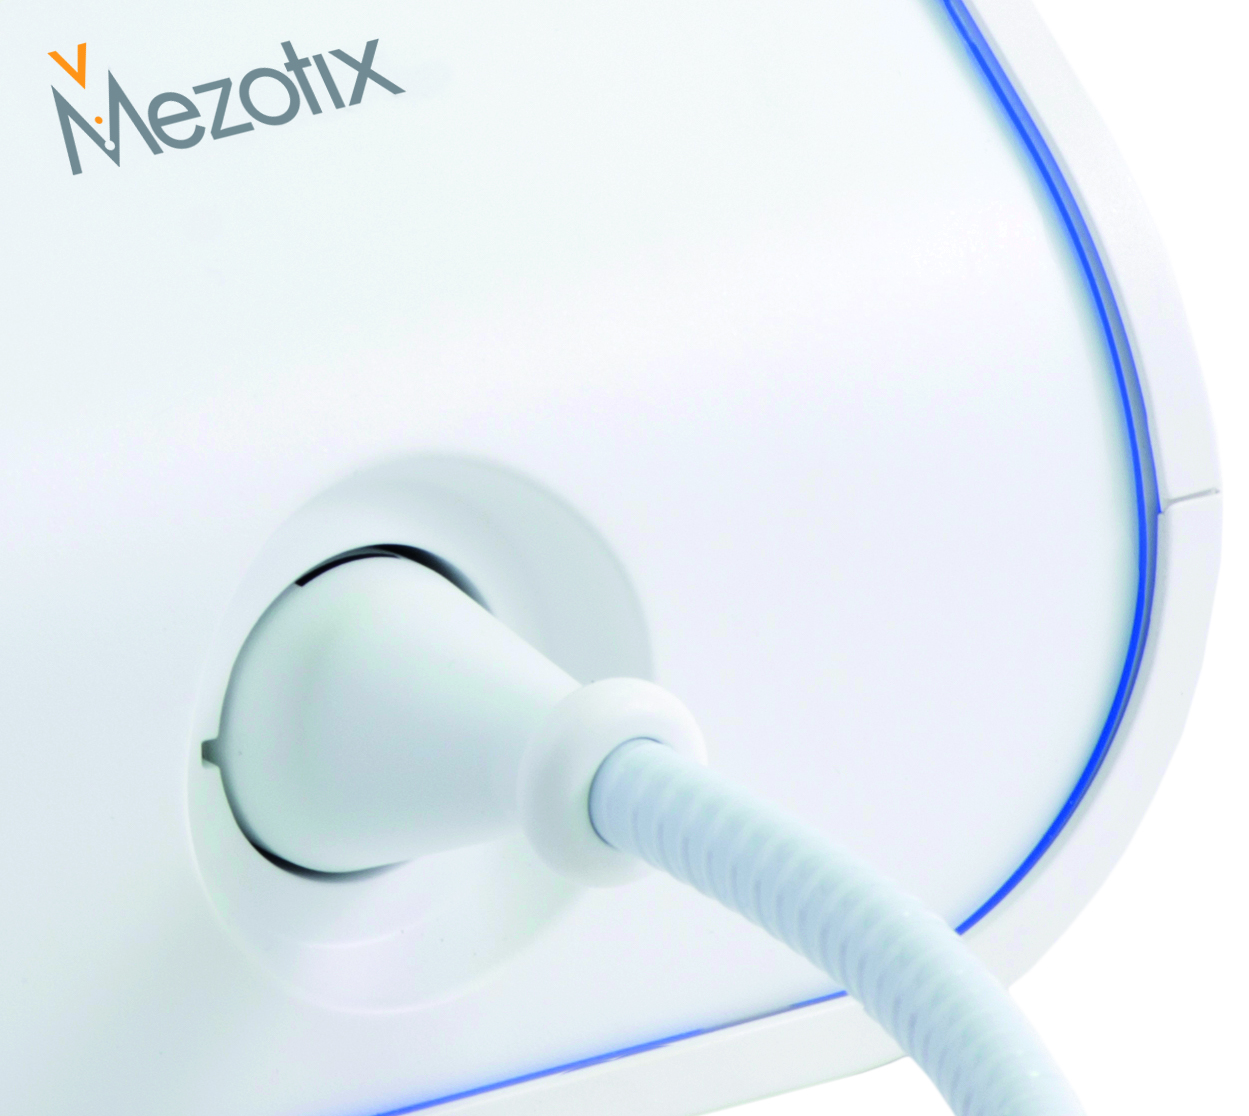 Mezotix (Tixel-Technologie) - Da das System nicht wie bei einem Laser eine flächige Schälung gibt, ist die Behandlung wunderbar mehrfach und auf Dauer anwendbar und auch zu jeder Jahreszeit und bei jeder Haut (Farbe/Typ) durchführbar. | RPM Medical & Kosmetik Rafael-Peter Mischewski Mönchengladbach